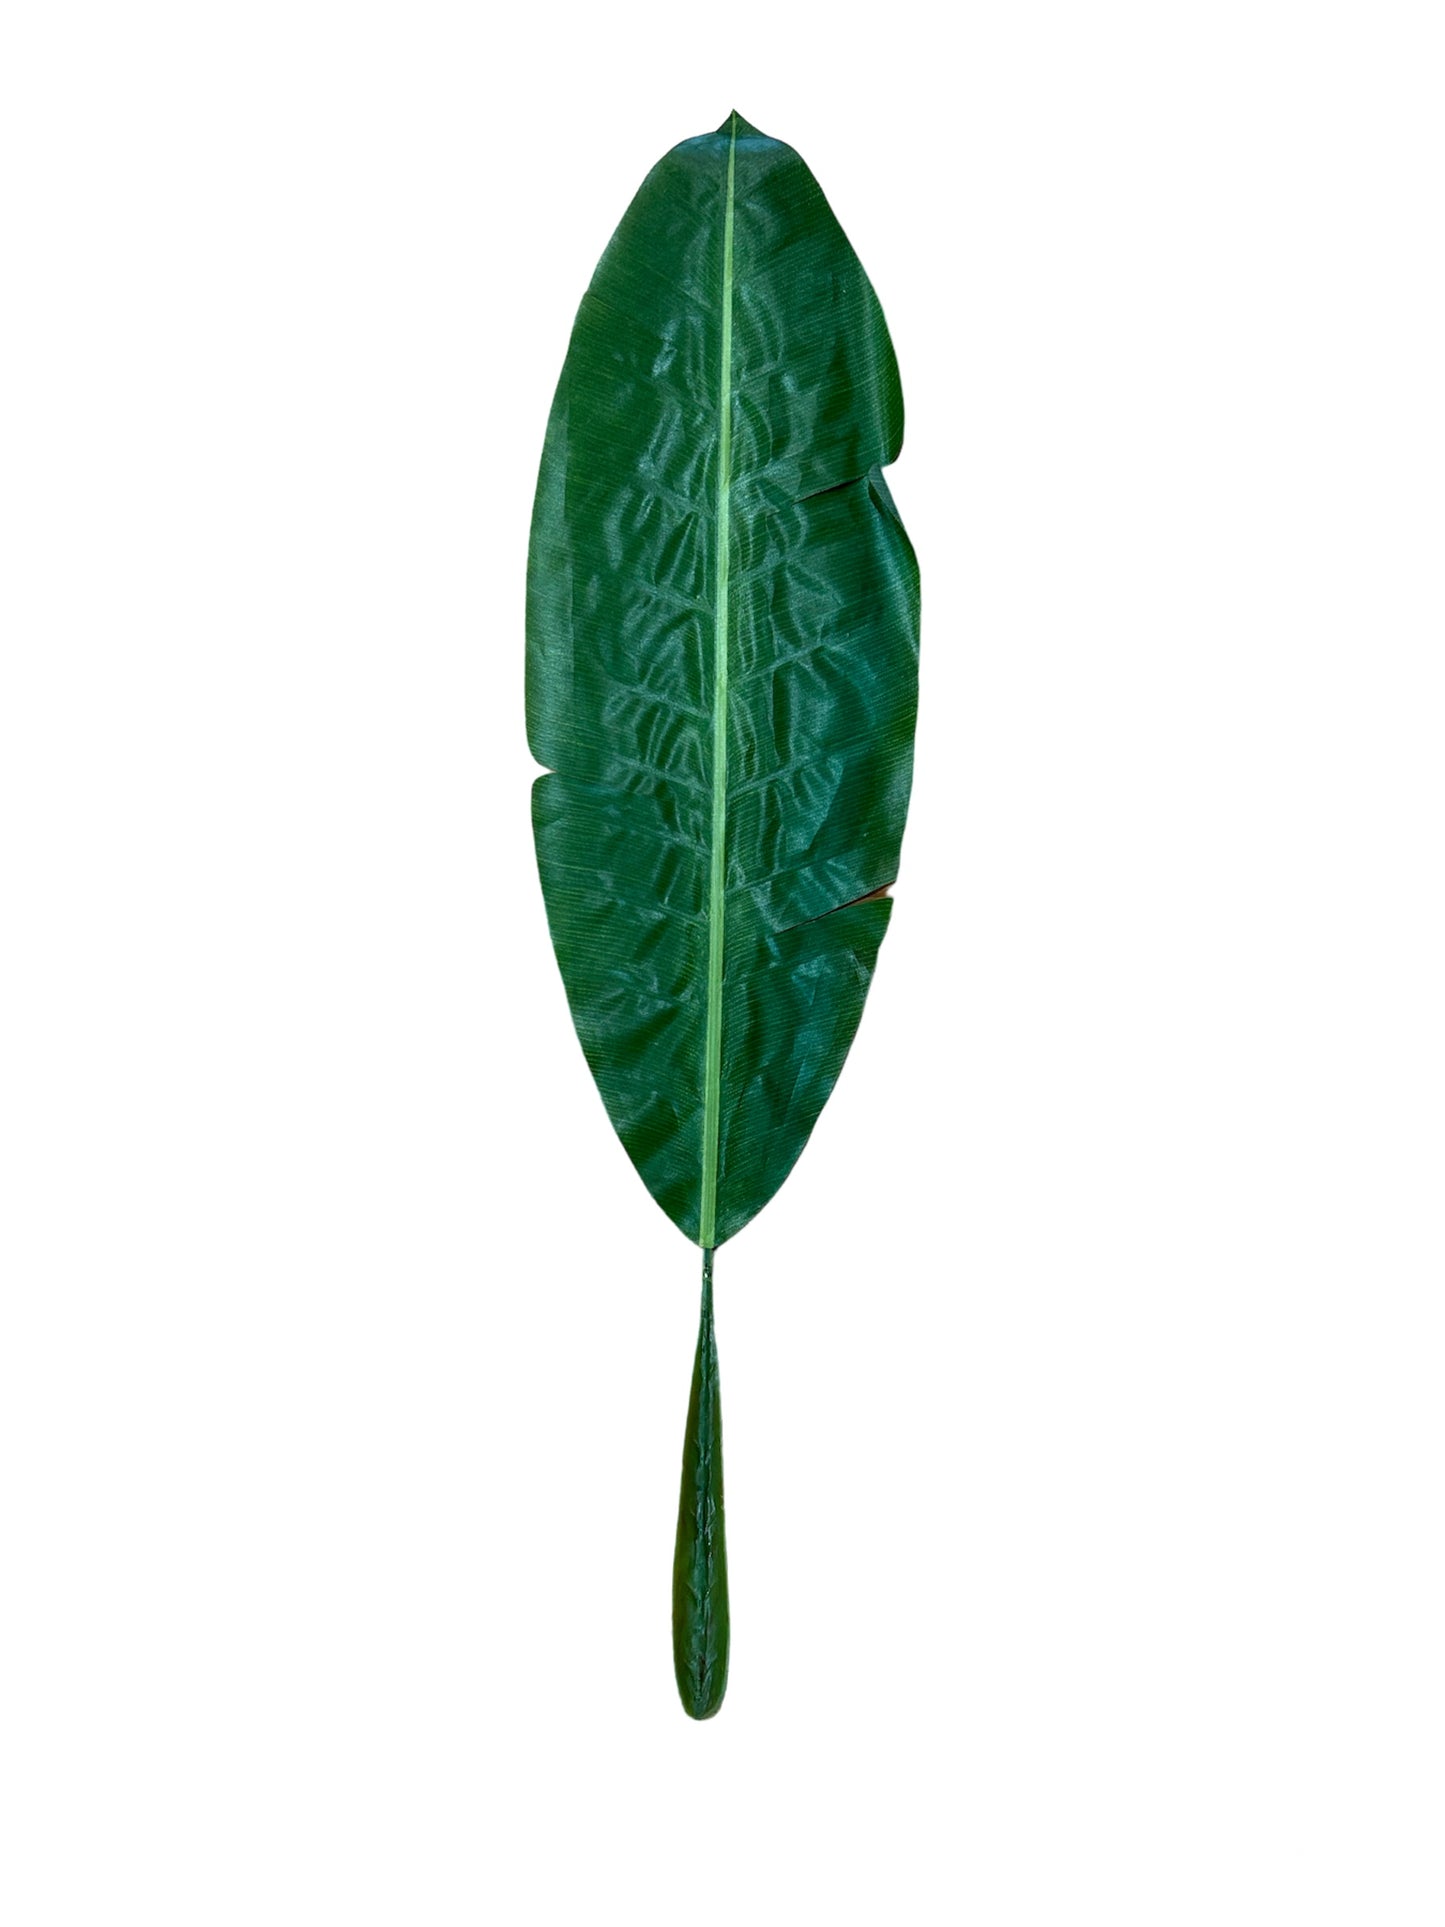 Foglia di Banano artificiale in plastica di colore verde. Dimensioni: cm 109 x 27. In negozio e online su tuttochic.it